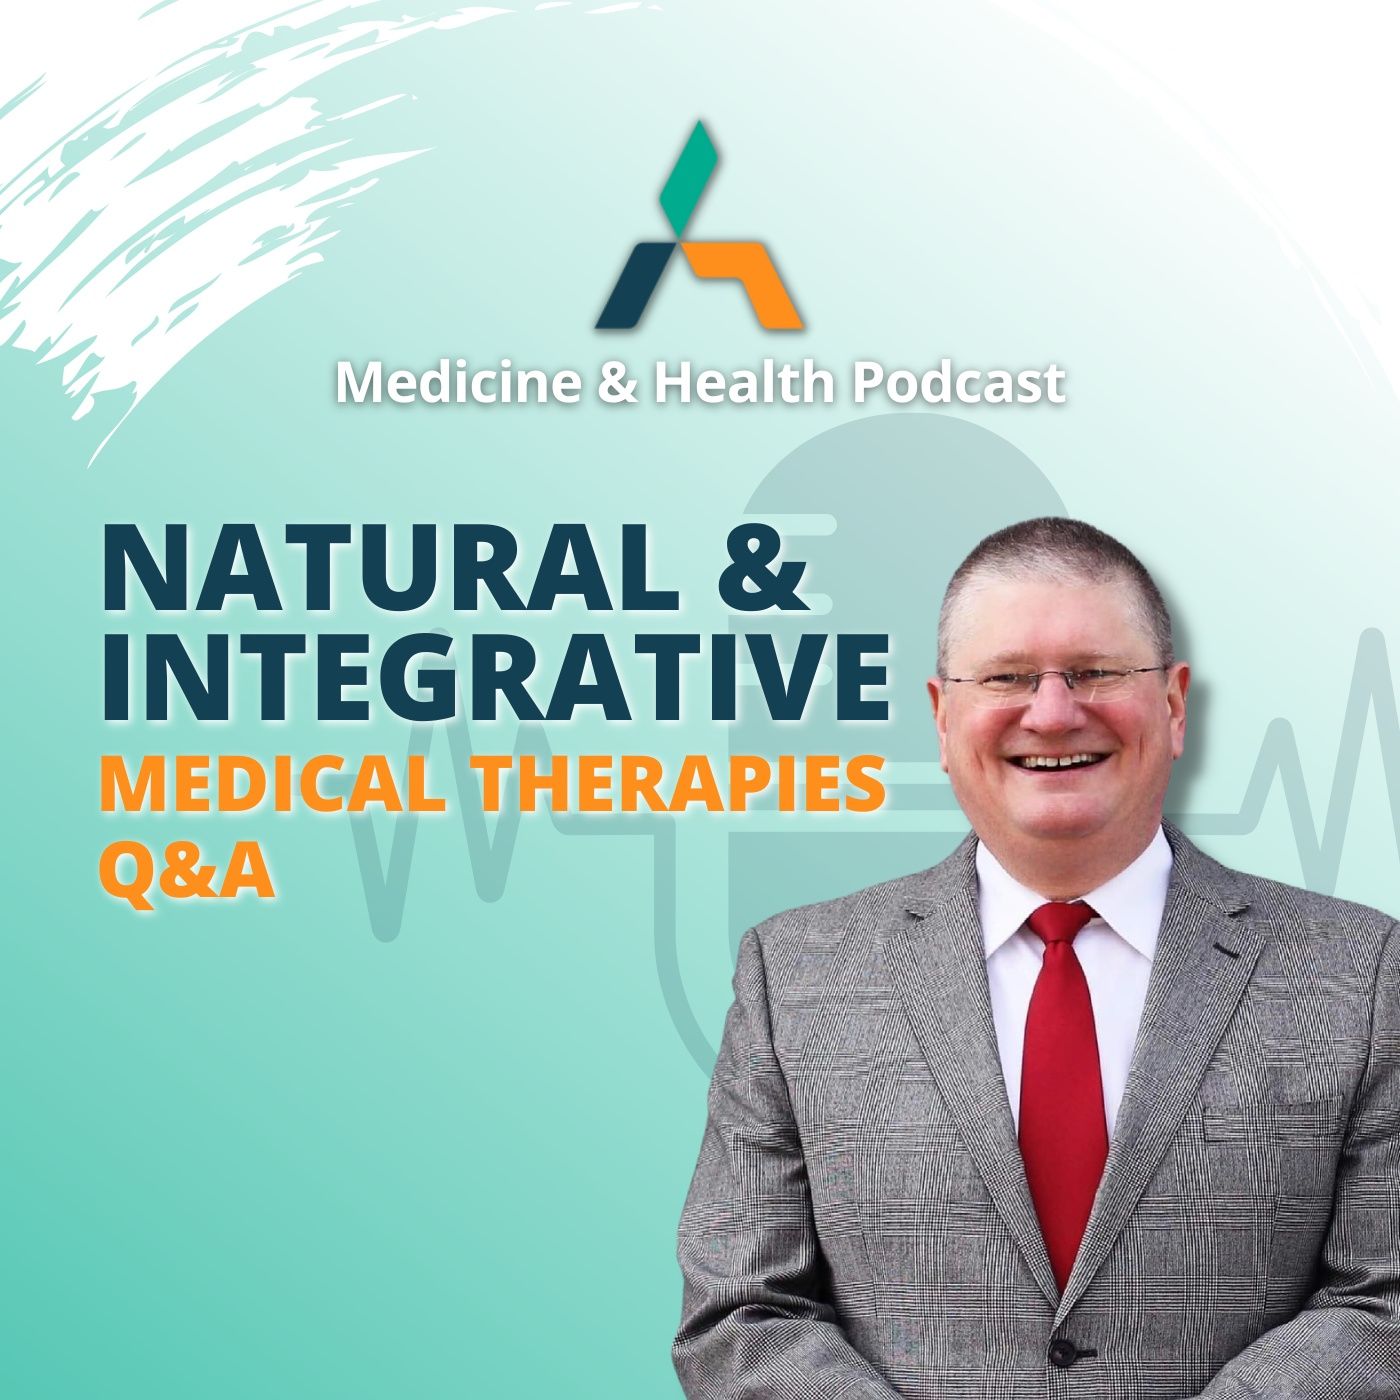 NATURAL & INTEGRATIVE MEDICAL THERAPIES Q&A | Medicine & Health Podcast